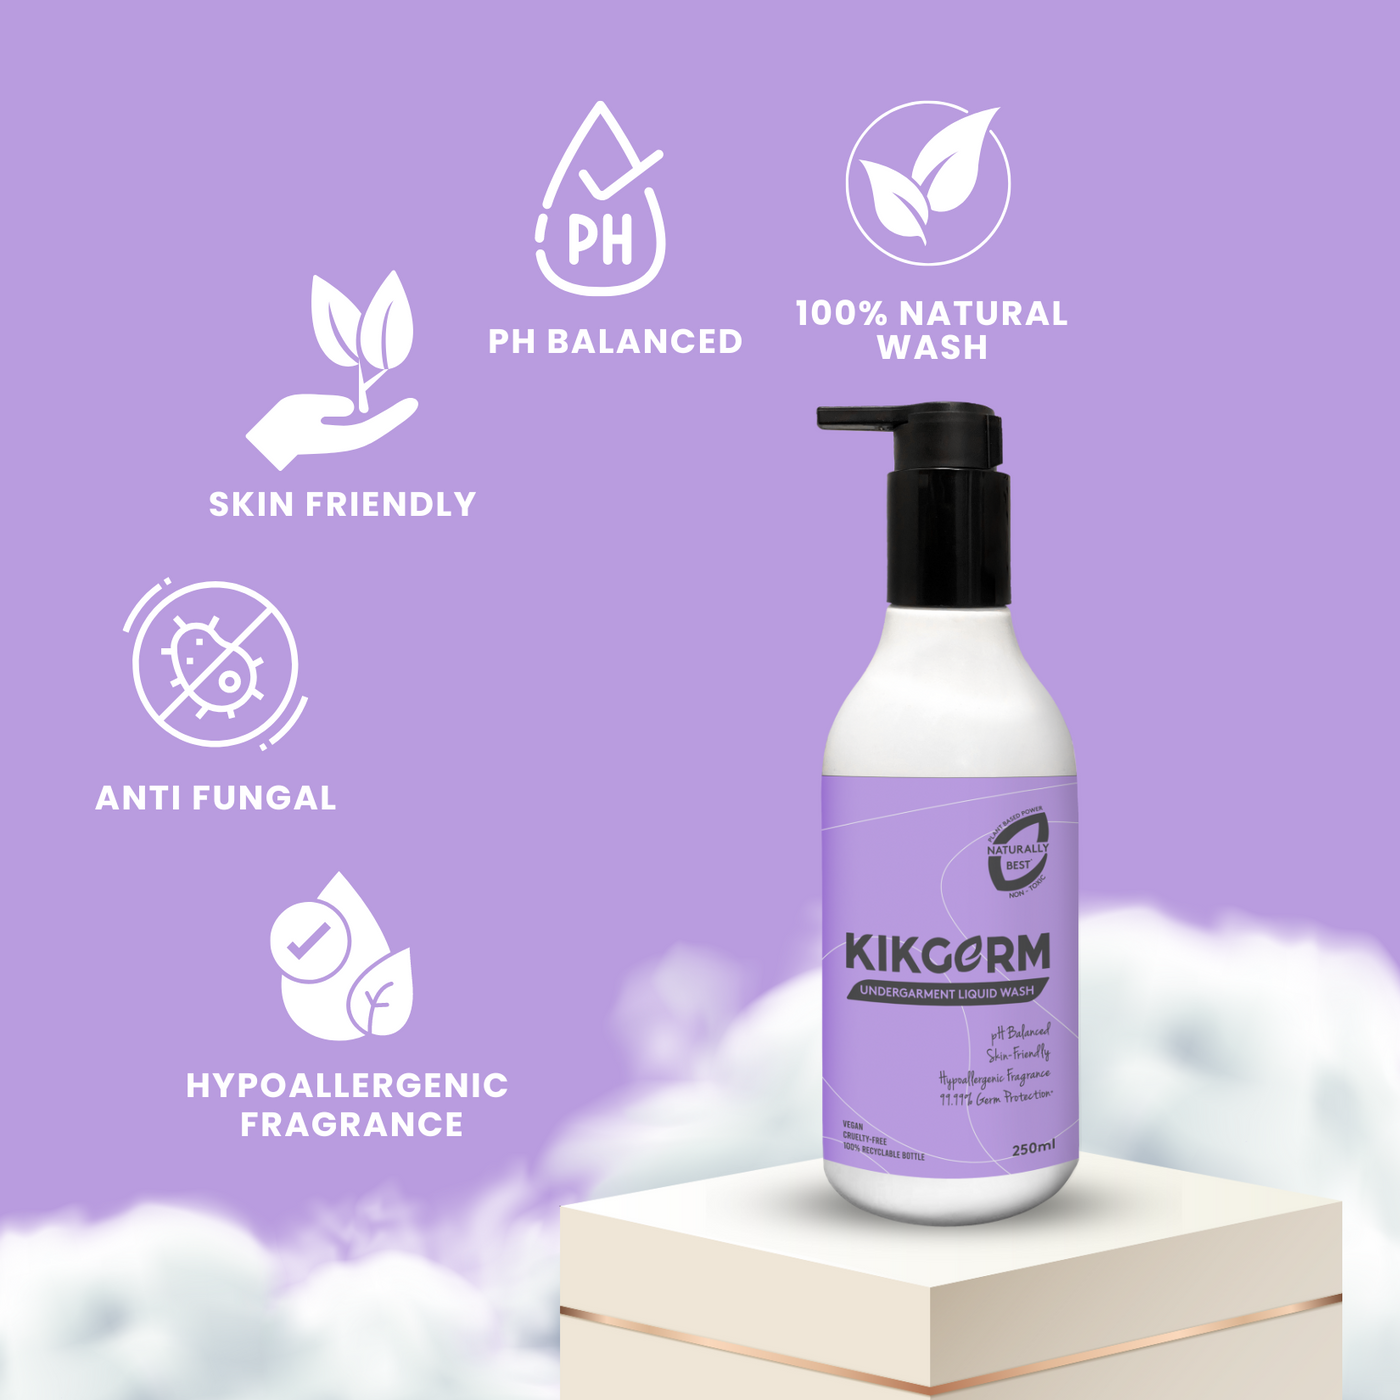 KIKGERM Natural Undergarment Liquid Detergent + Brush | 250ml